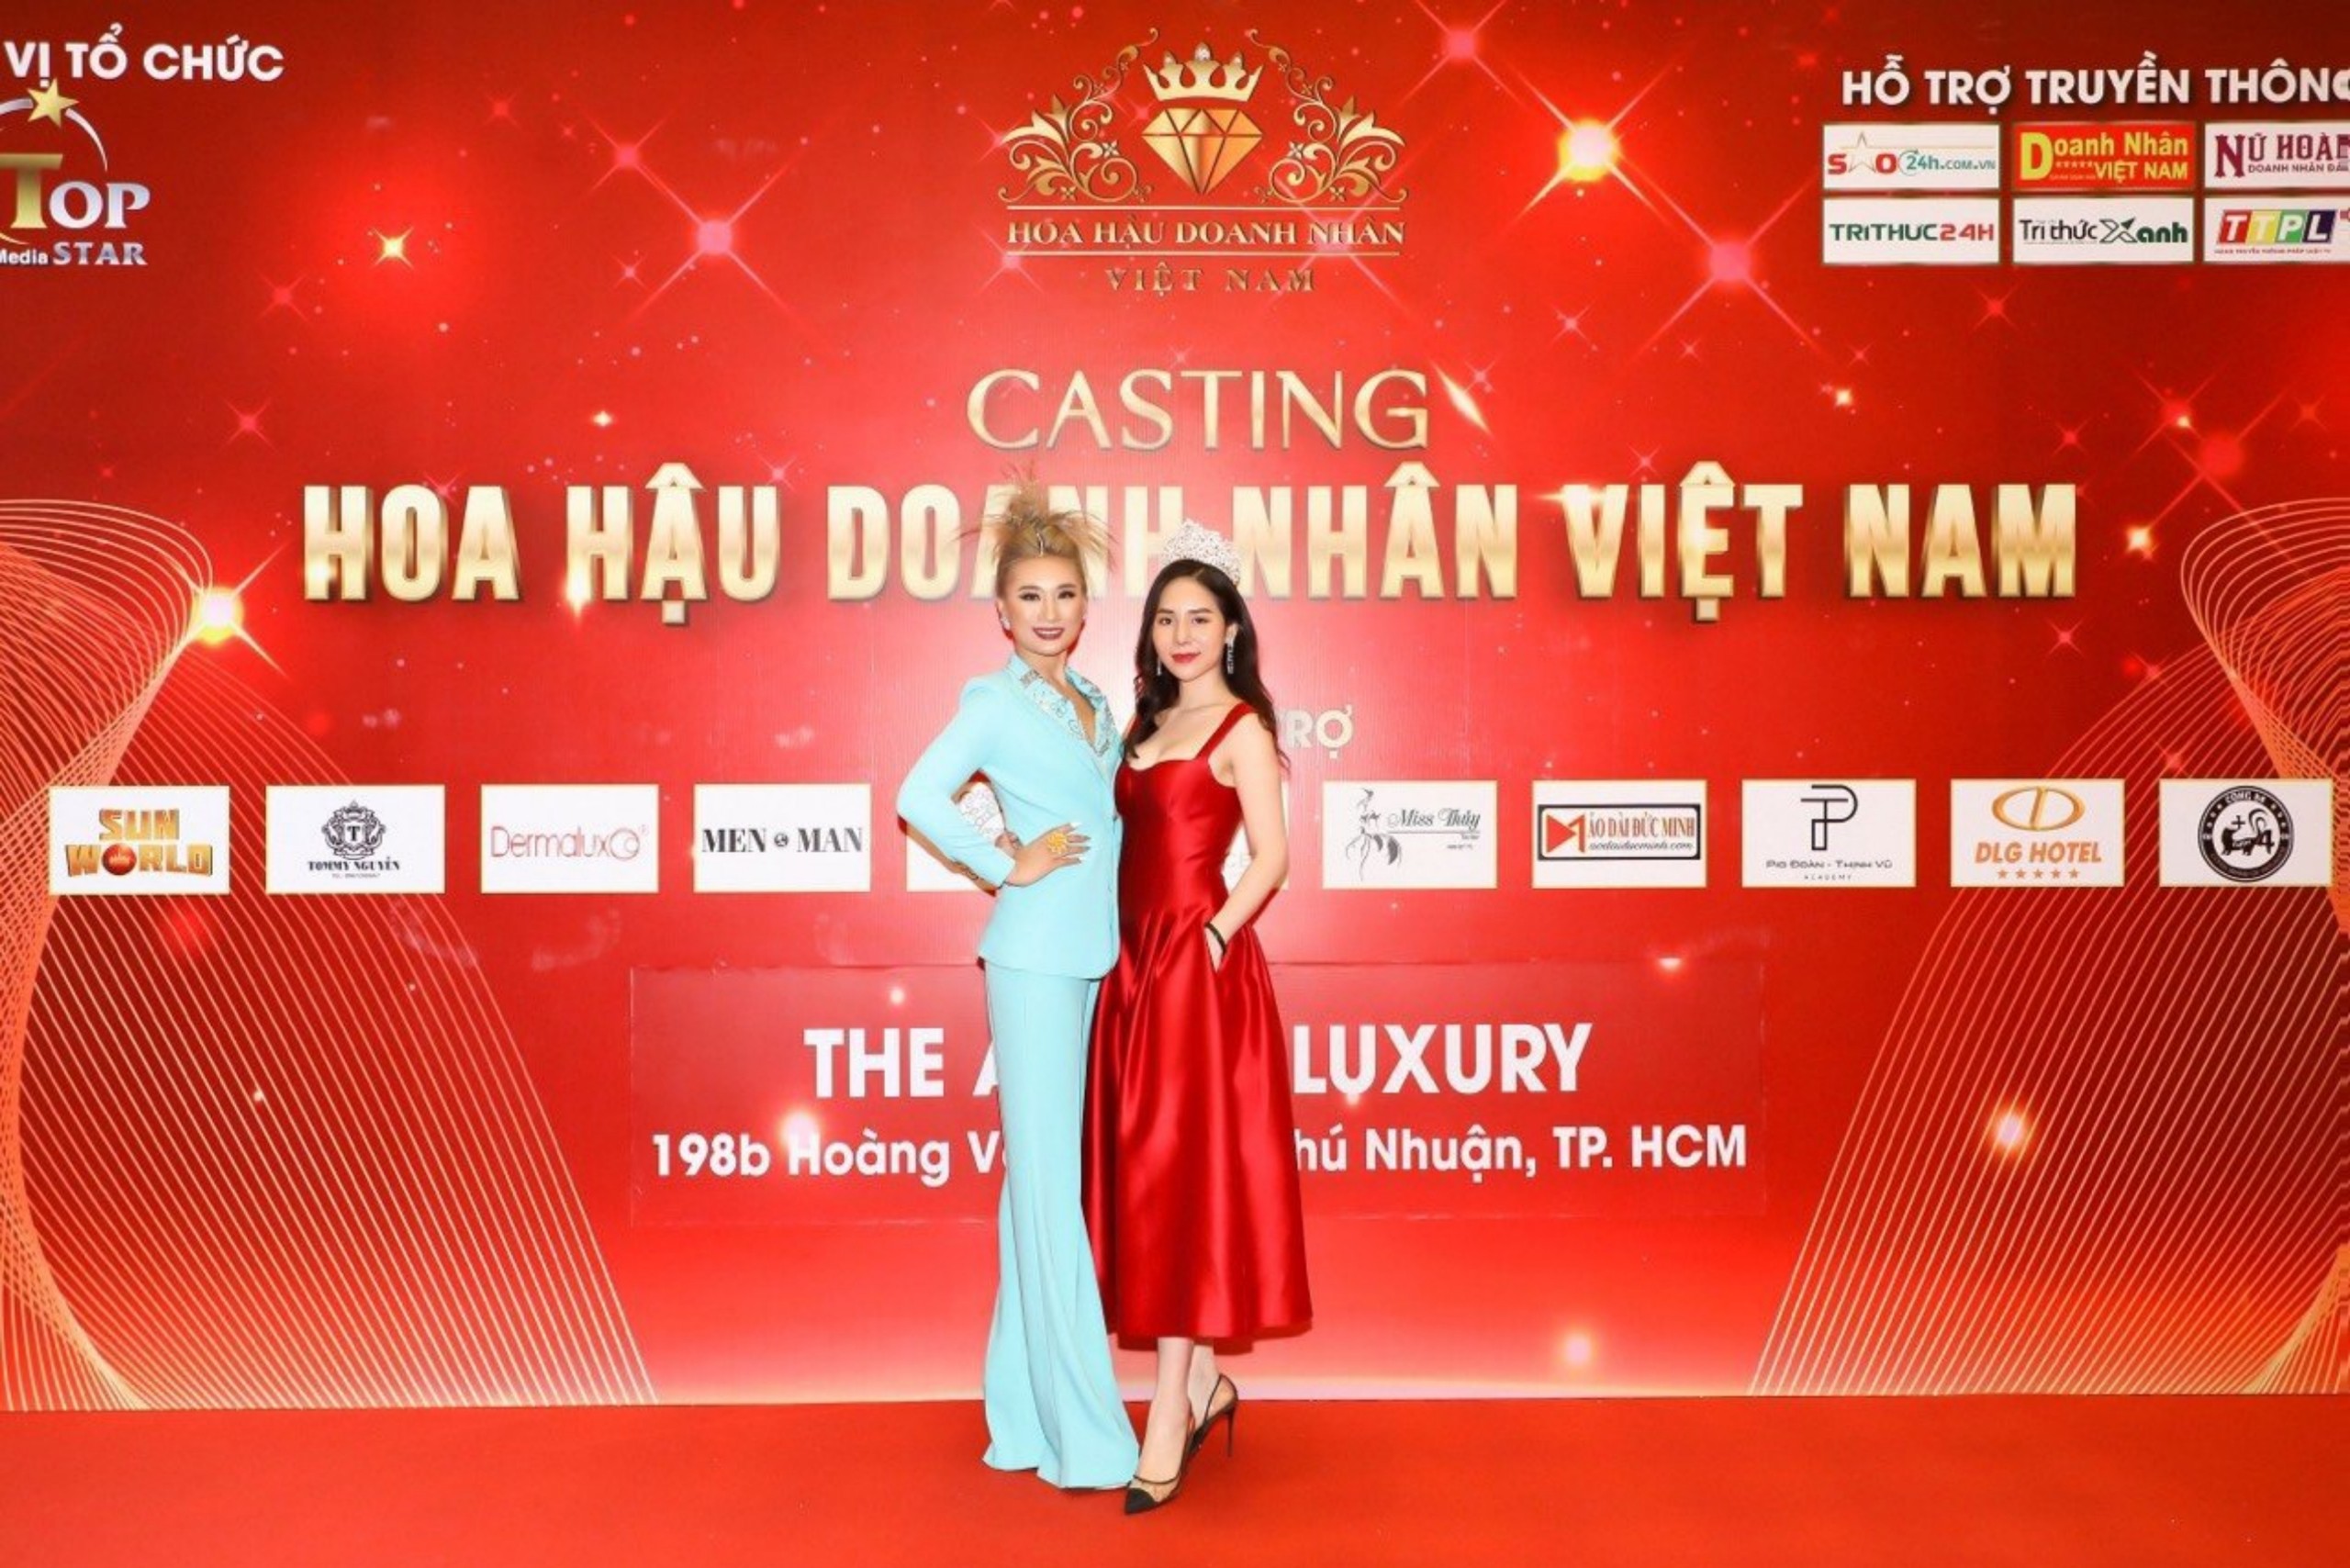 Sau đăng quang, Á hậu Vũ Khánh Hòa nổi bật tại buổi casting Hoa hậu Doanh nhân Việt Nam 2022